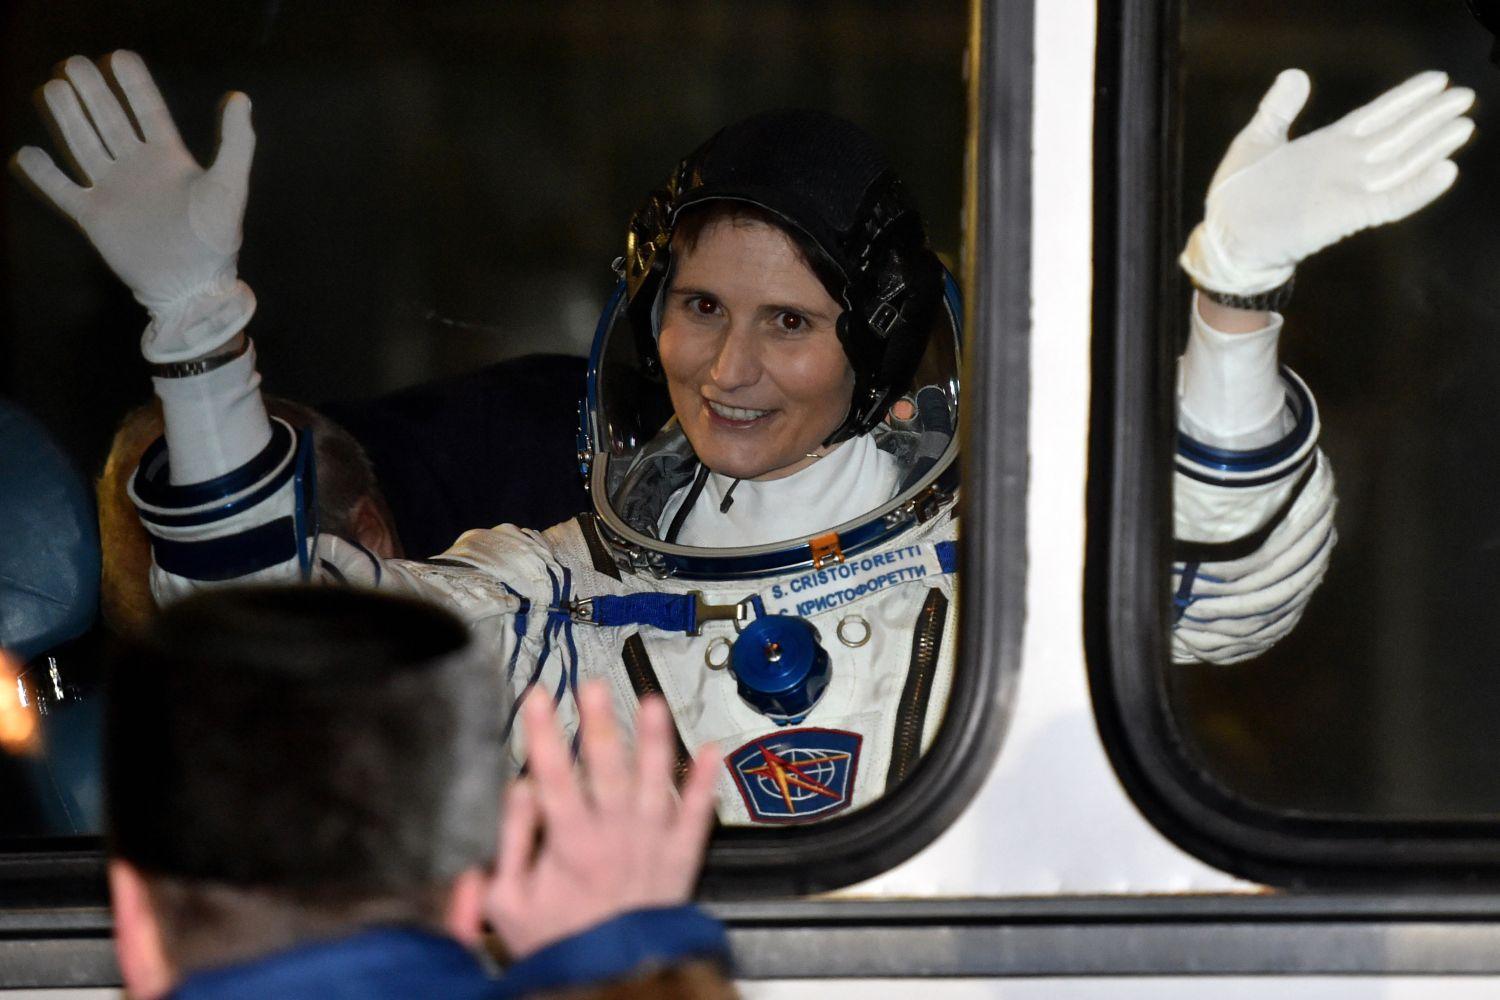 Egy ISS-re induló olasz kozmonauta, Samantha Cristoforetti búcsúja tavaly decemberben. Kopogó szemmel